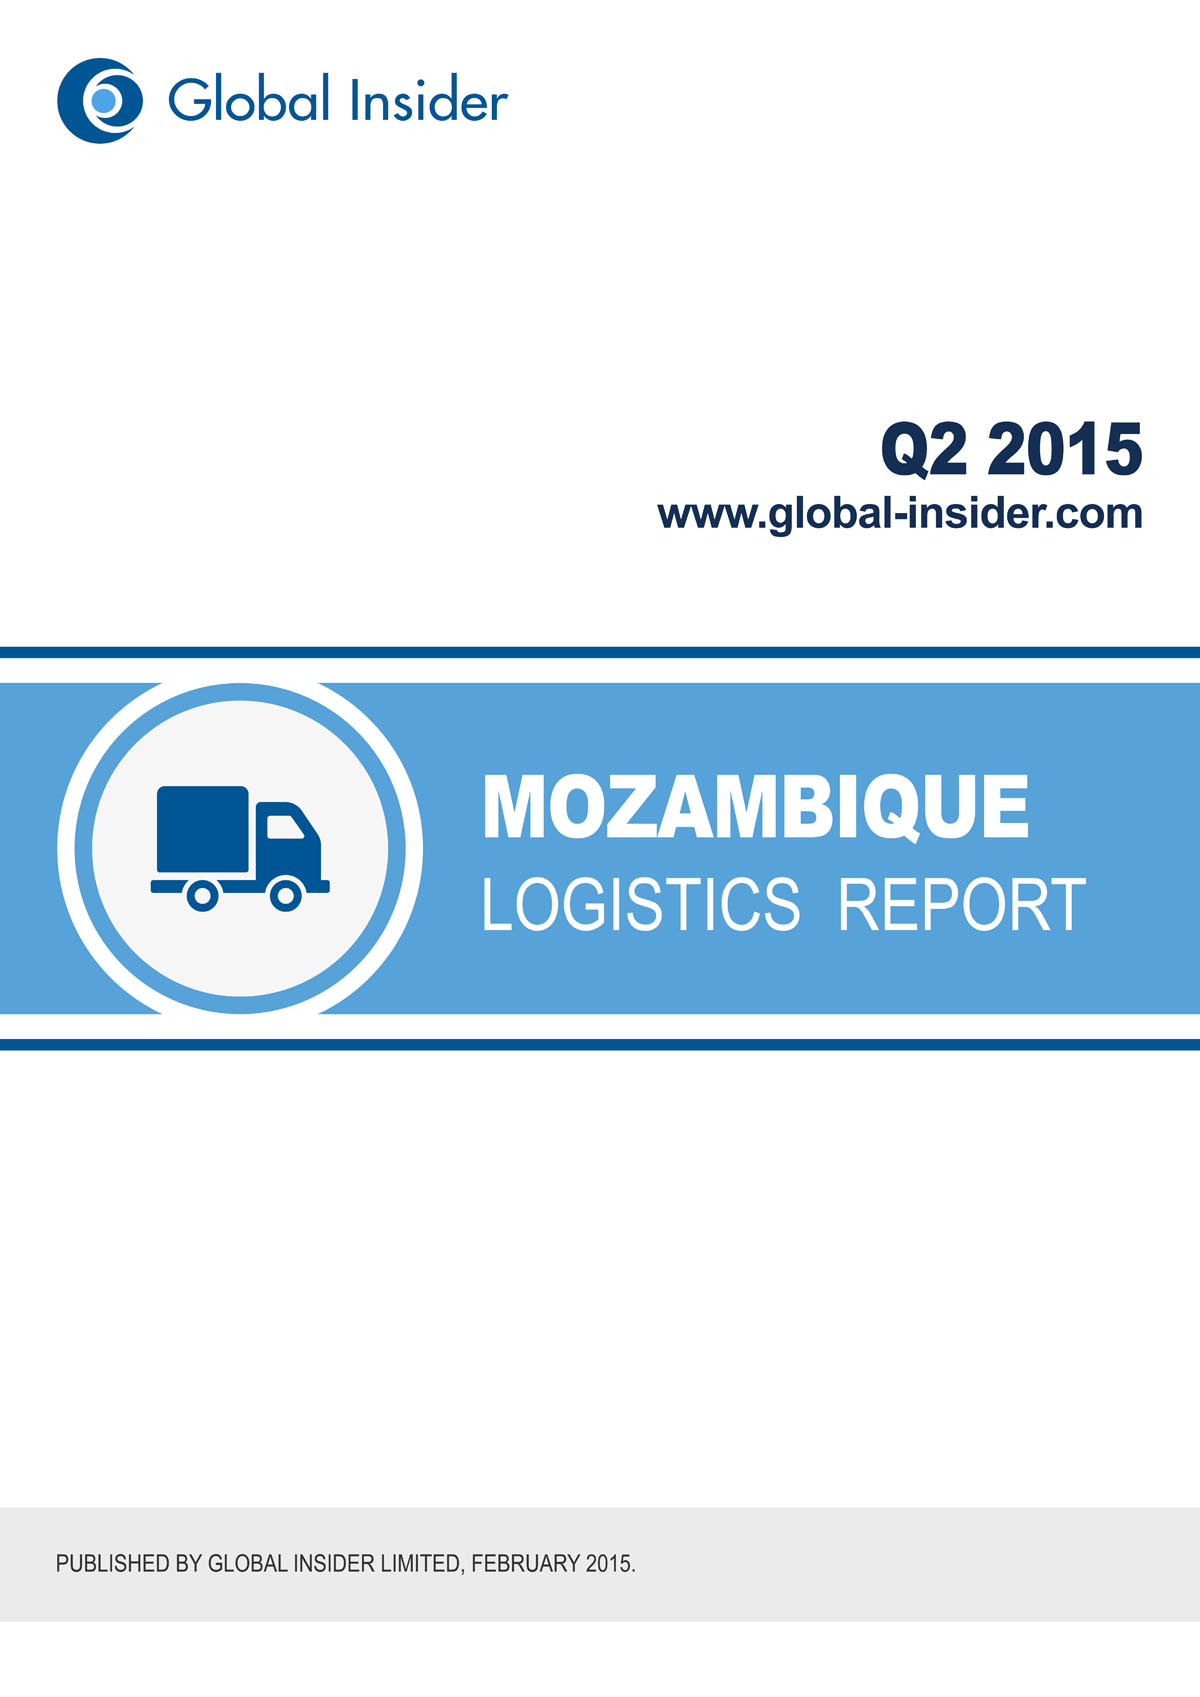 Mozambique Logistics Report